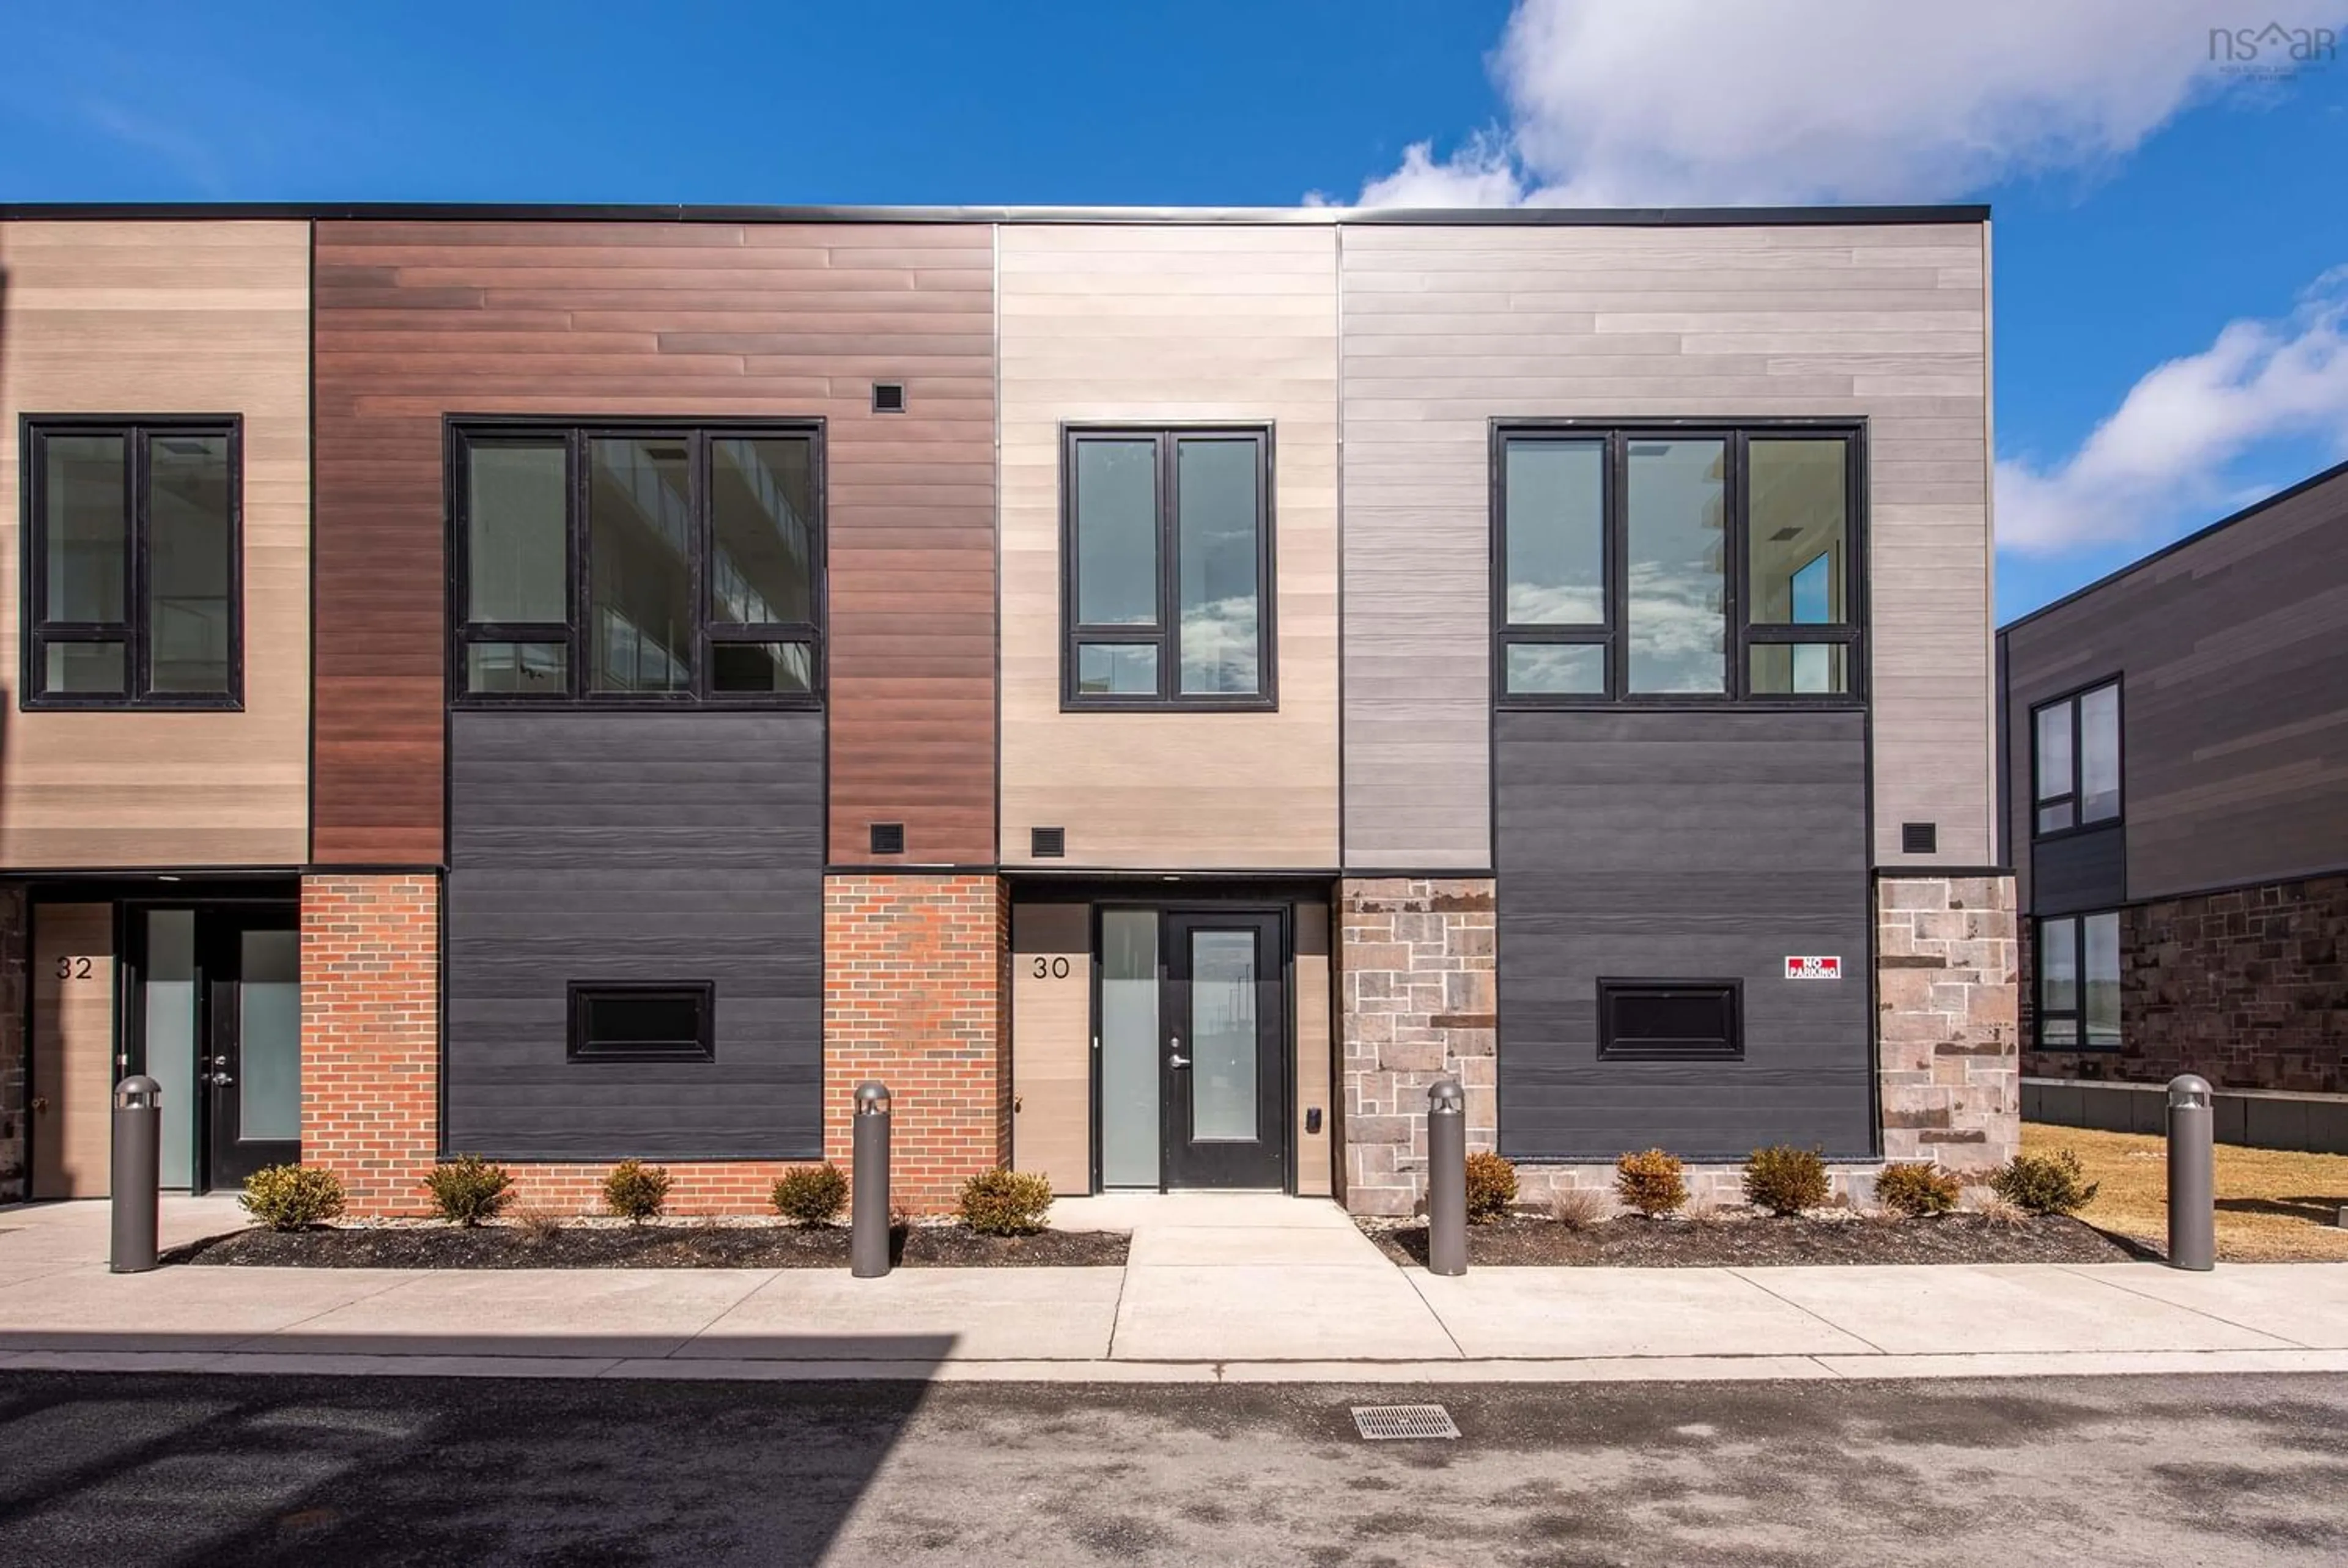 Home with brick exterior material for 30 Sailmaster Lane, Dartmouth Nova Scotia B3B 0R3